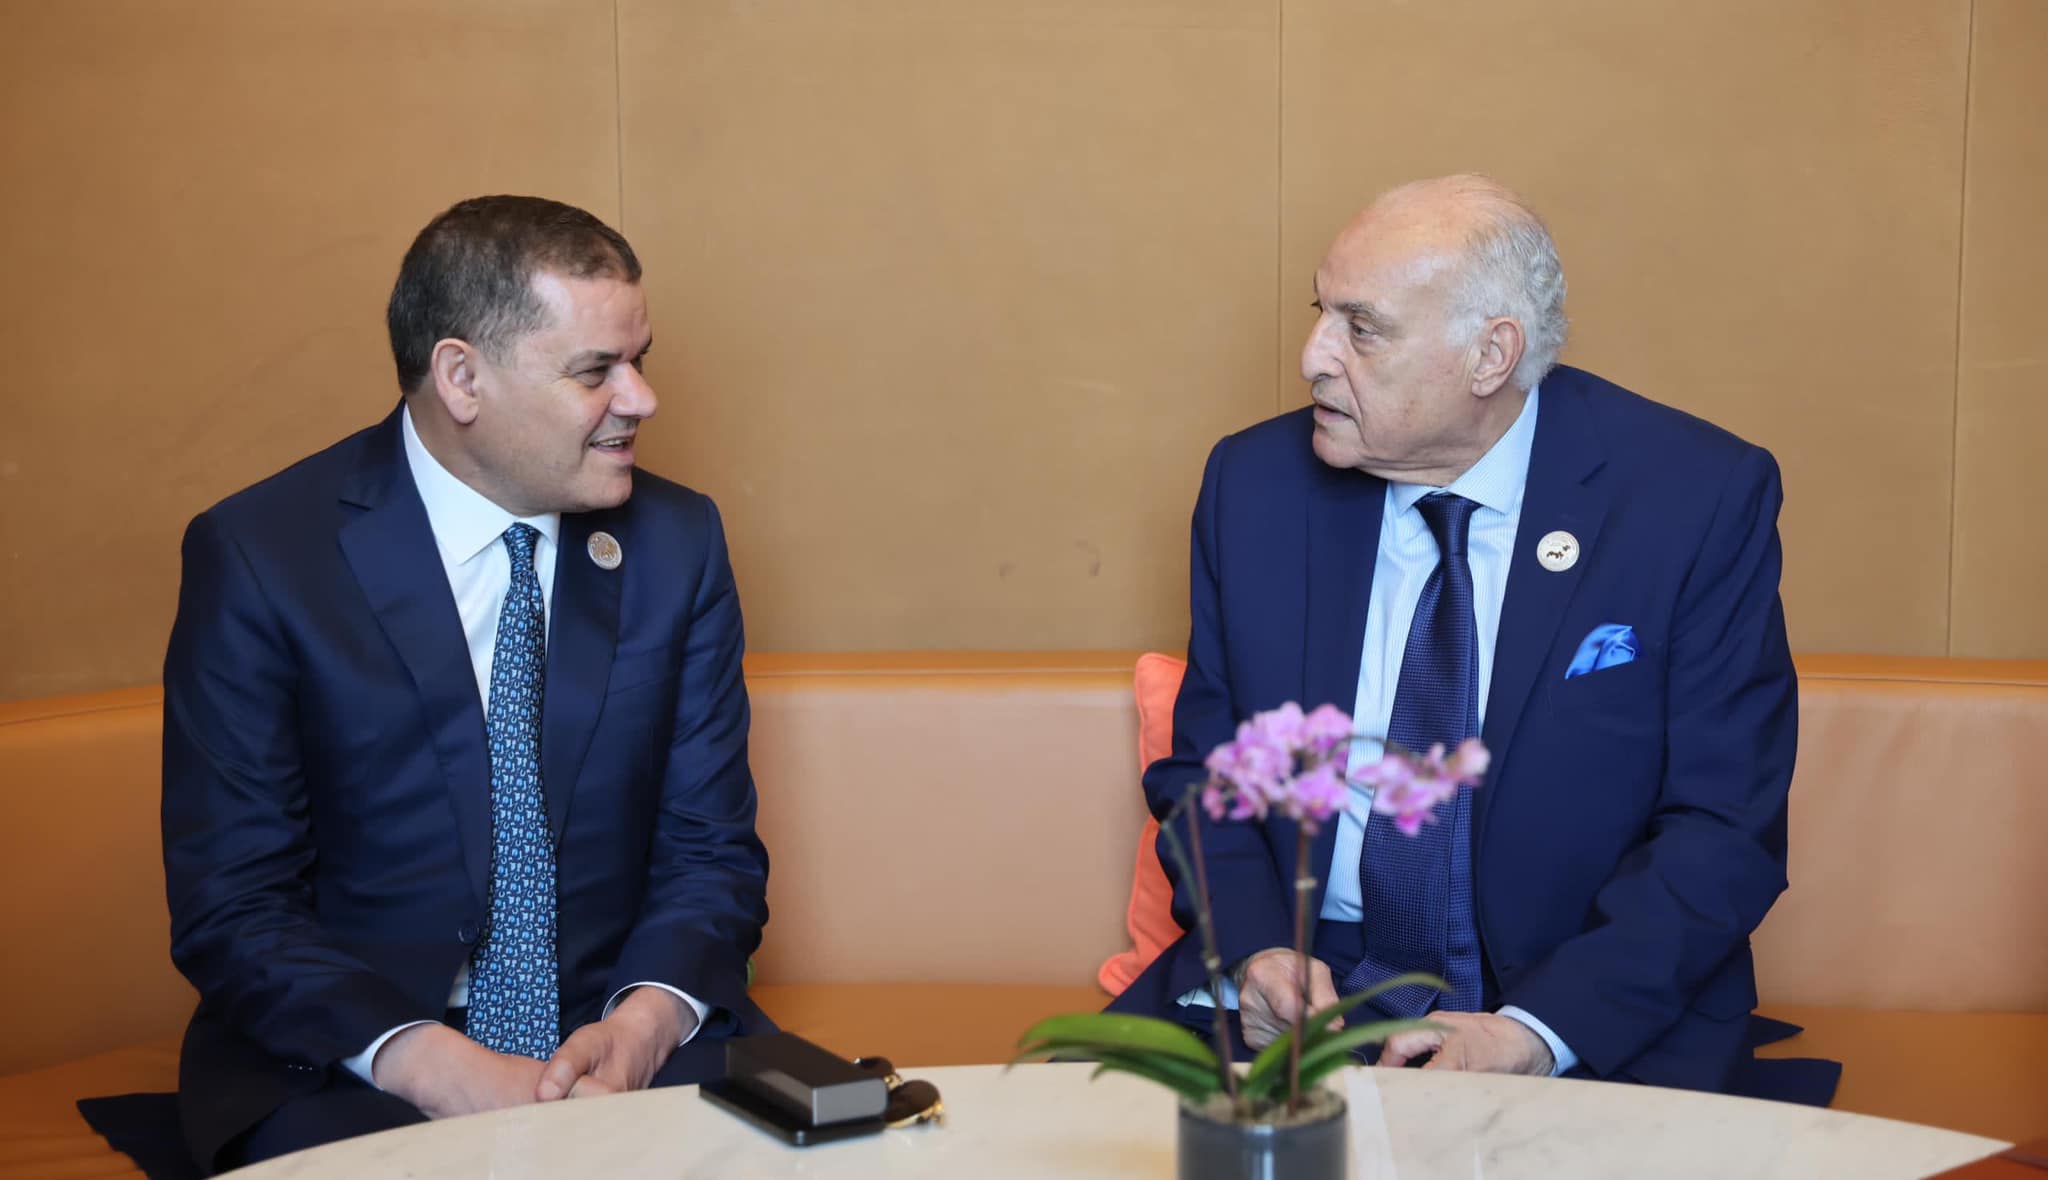 الدبيبة يناقش في الدوحة مع وزير الخارجية الجزائري الأوضاع السياسية والتعاون المشترك بين البلدين.